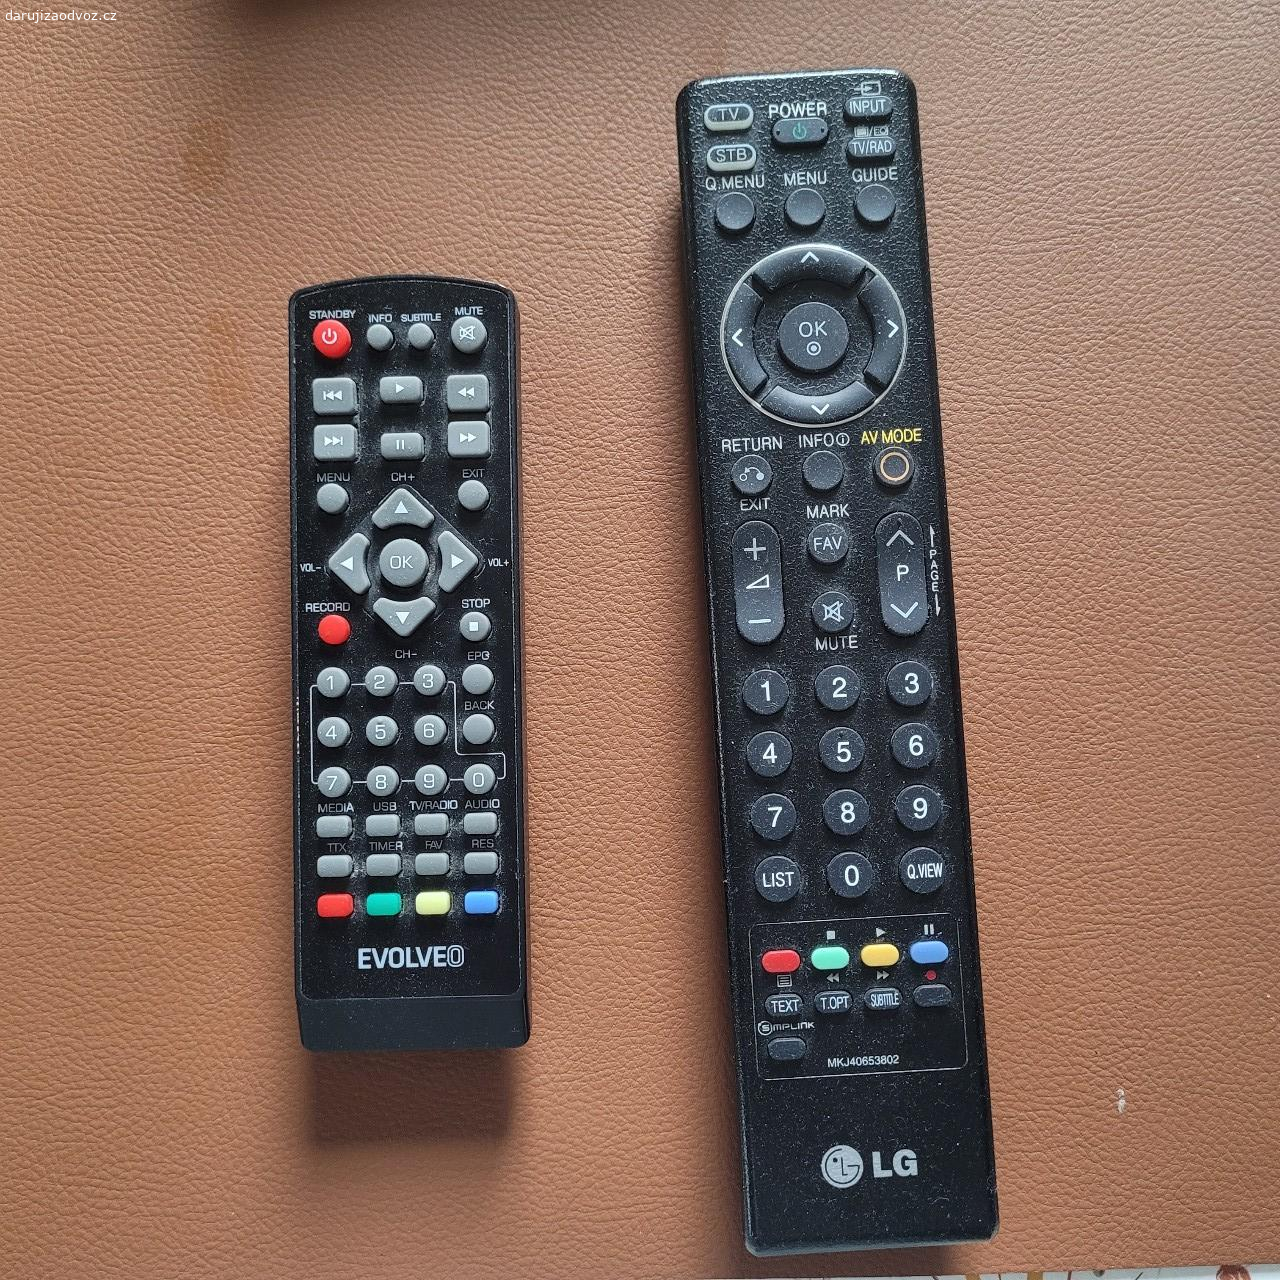 Daruji TV LG323000. Daruji televizi značky LG, model 32LG3000. Plně funkční, v dobrém stavu, cca 10 let stará. Spolu s DVB T2 set top boxem a dvěma ovladači (na TV a na set top box). Odběr pouze osobně v okolí Šluknova.